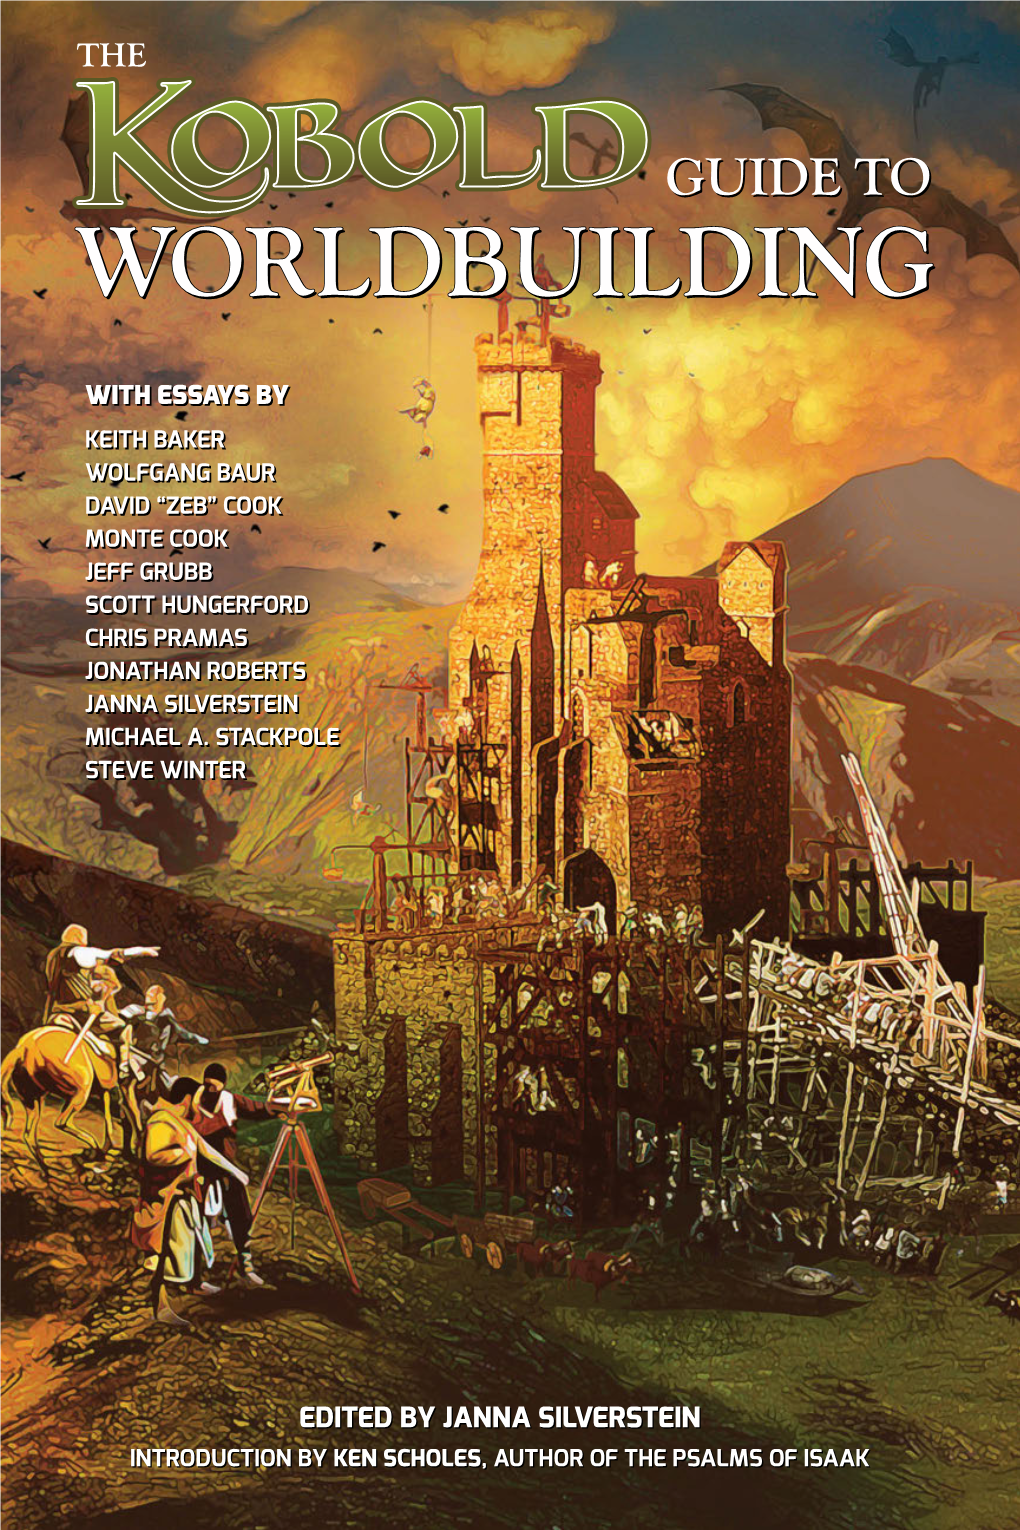 Worldbuildingworldbuilding